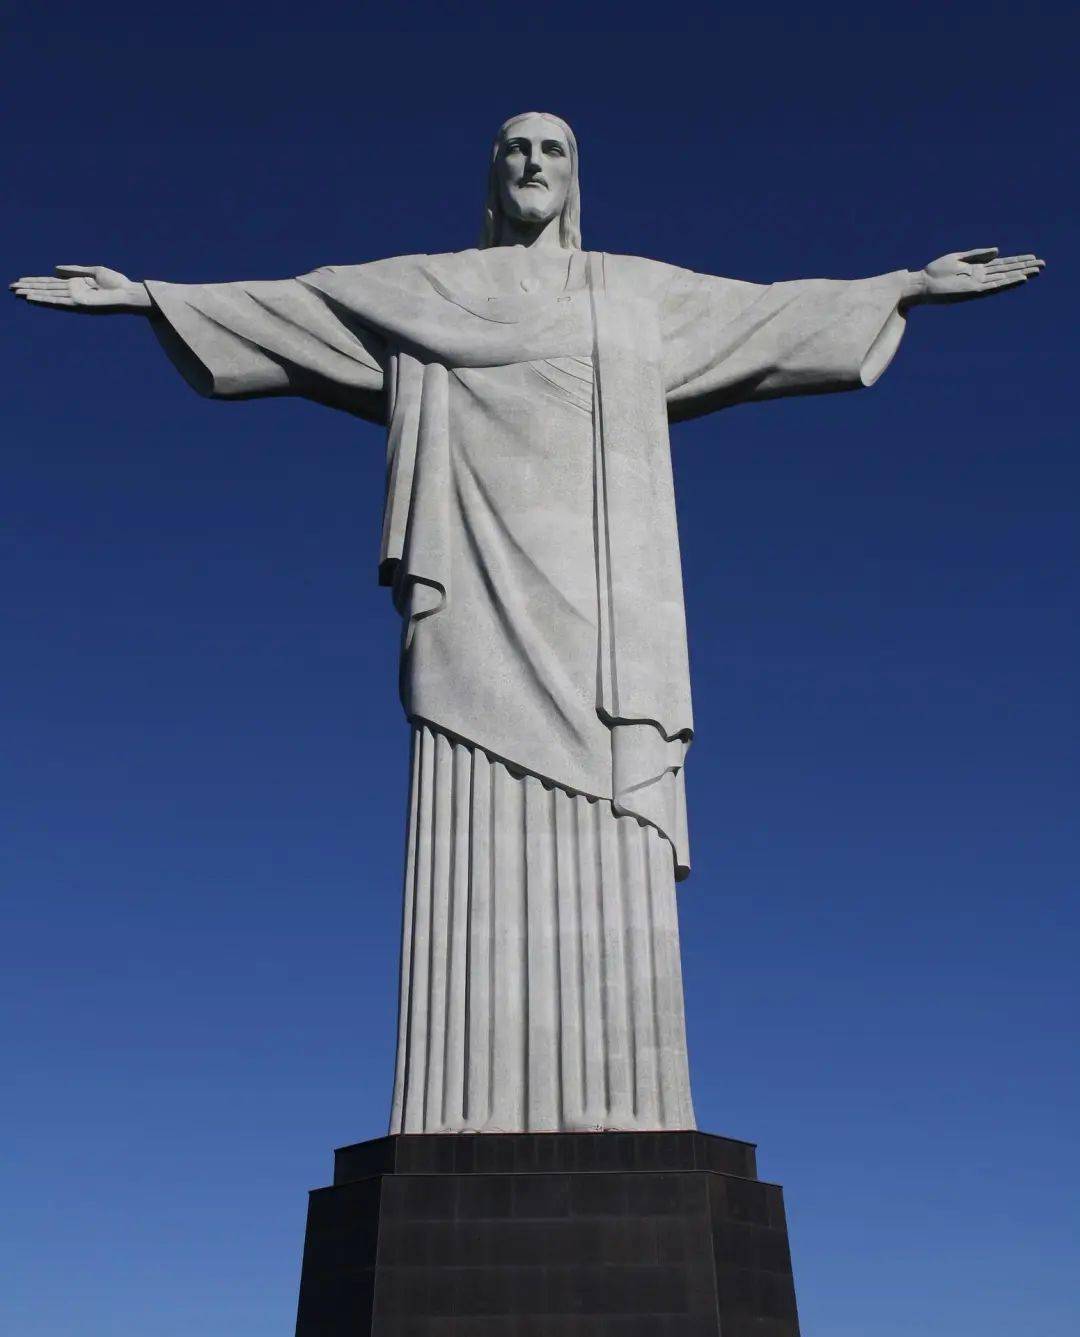 巴西基督像高清图片图片